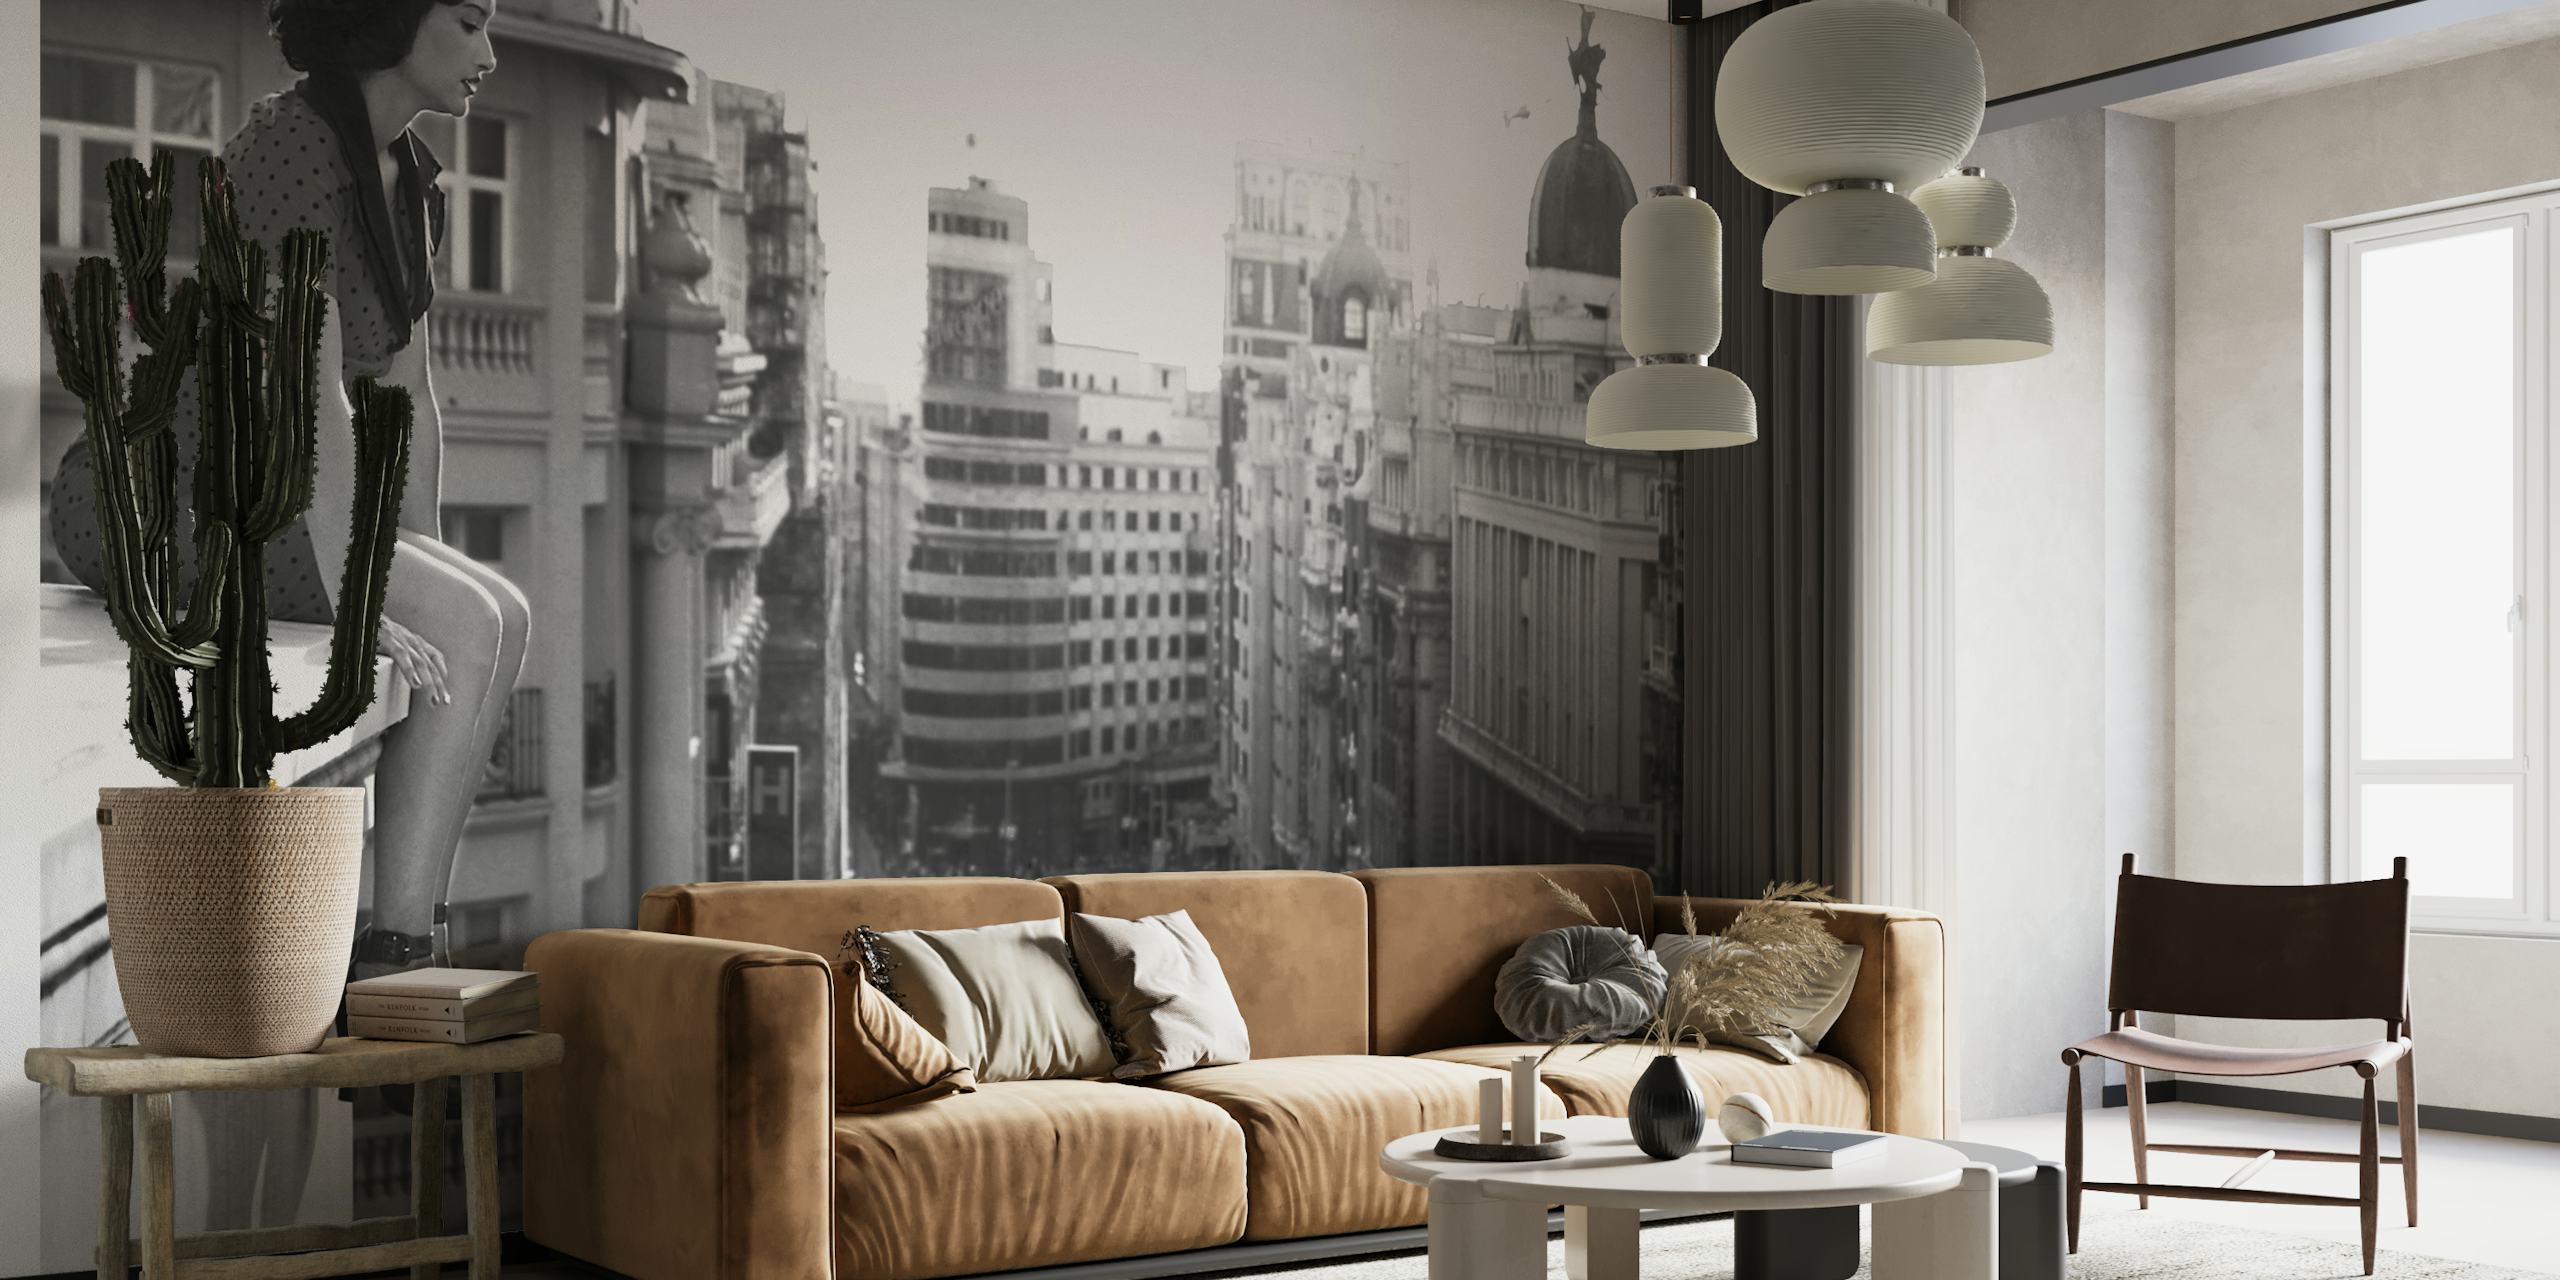 Mural em preto e branco de uma paisagem urbana representando a energia urbana e os edifícios históricos de Madrid.